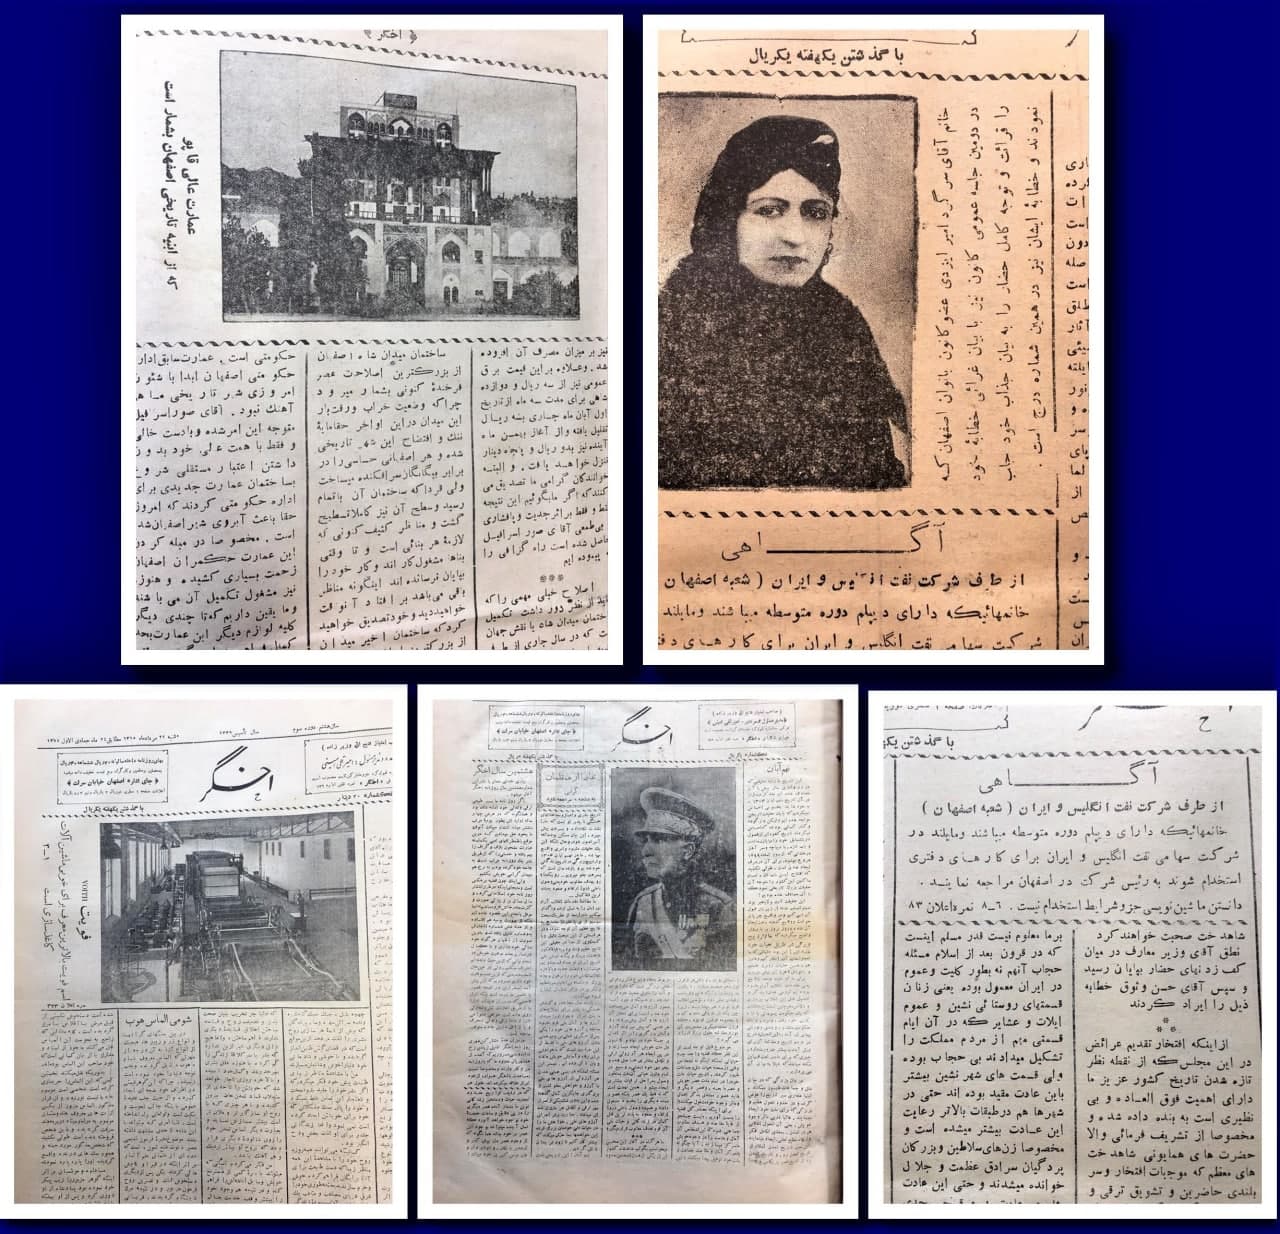 🔸عنوان : روزنامه اخگر/مخزن کتابخانه سعداباد